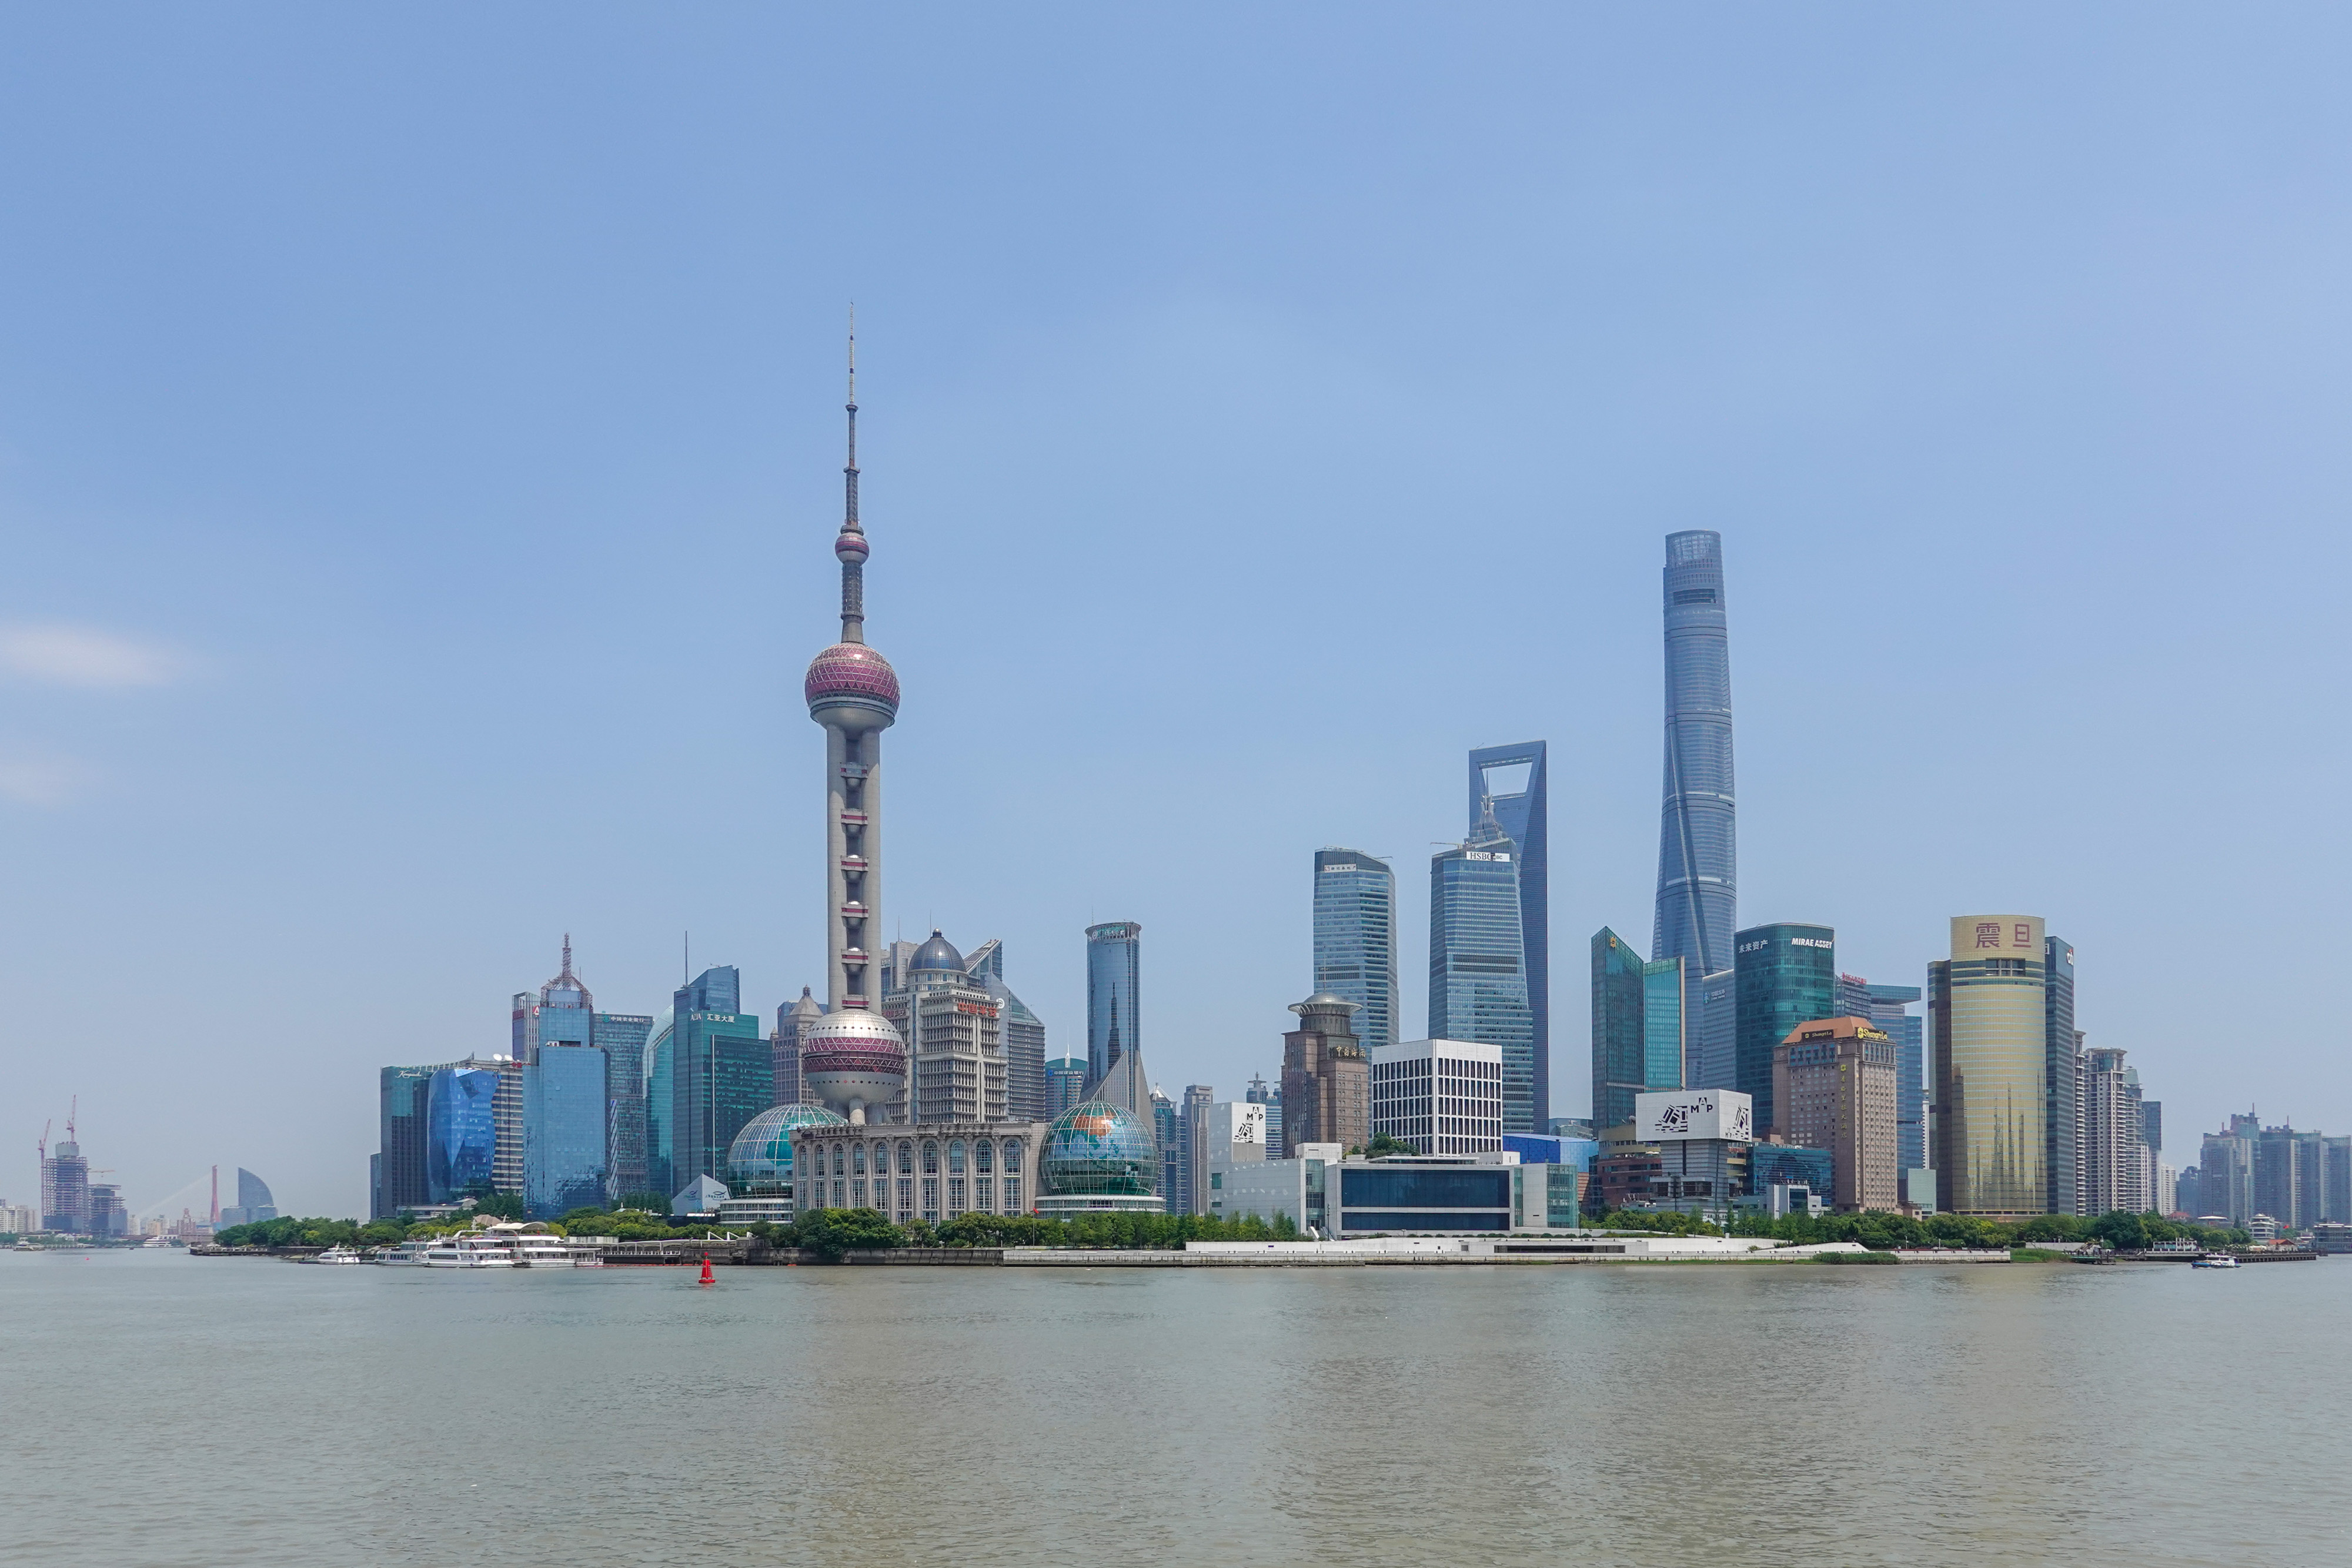 The urban scenery of Lujiazui, Shanghai /CNSPHOTO